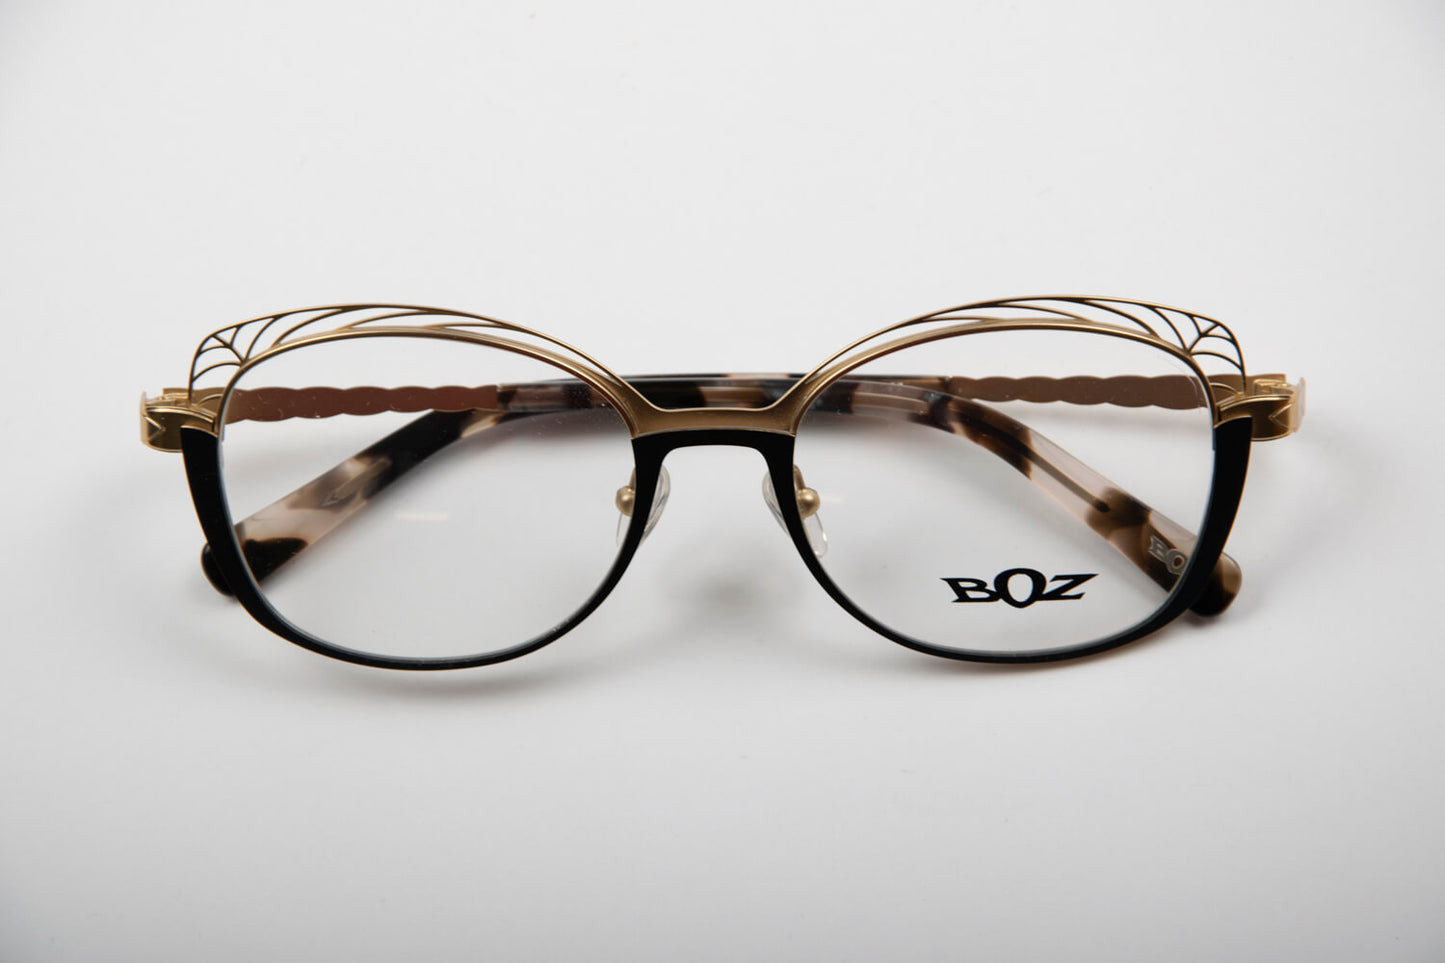 Boz Eyewear | Hourra | Nero e Oro - OTTICA SICOLI